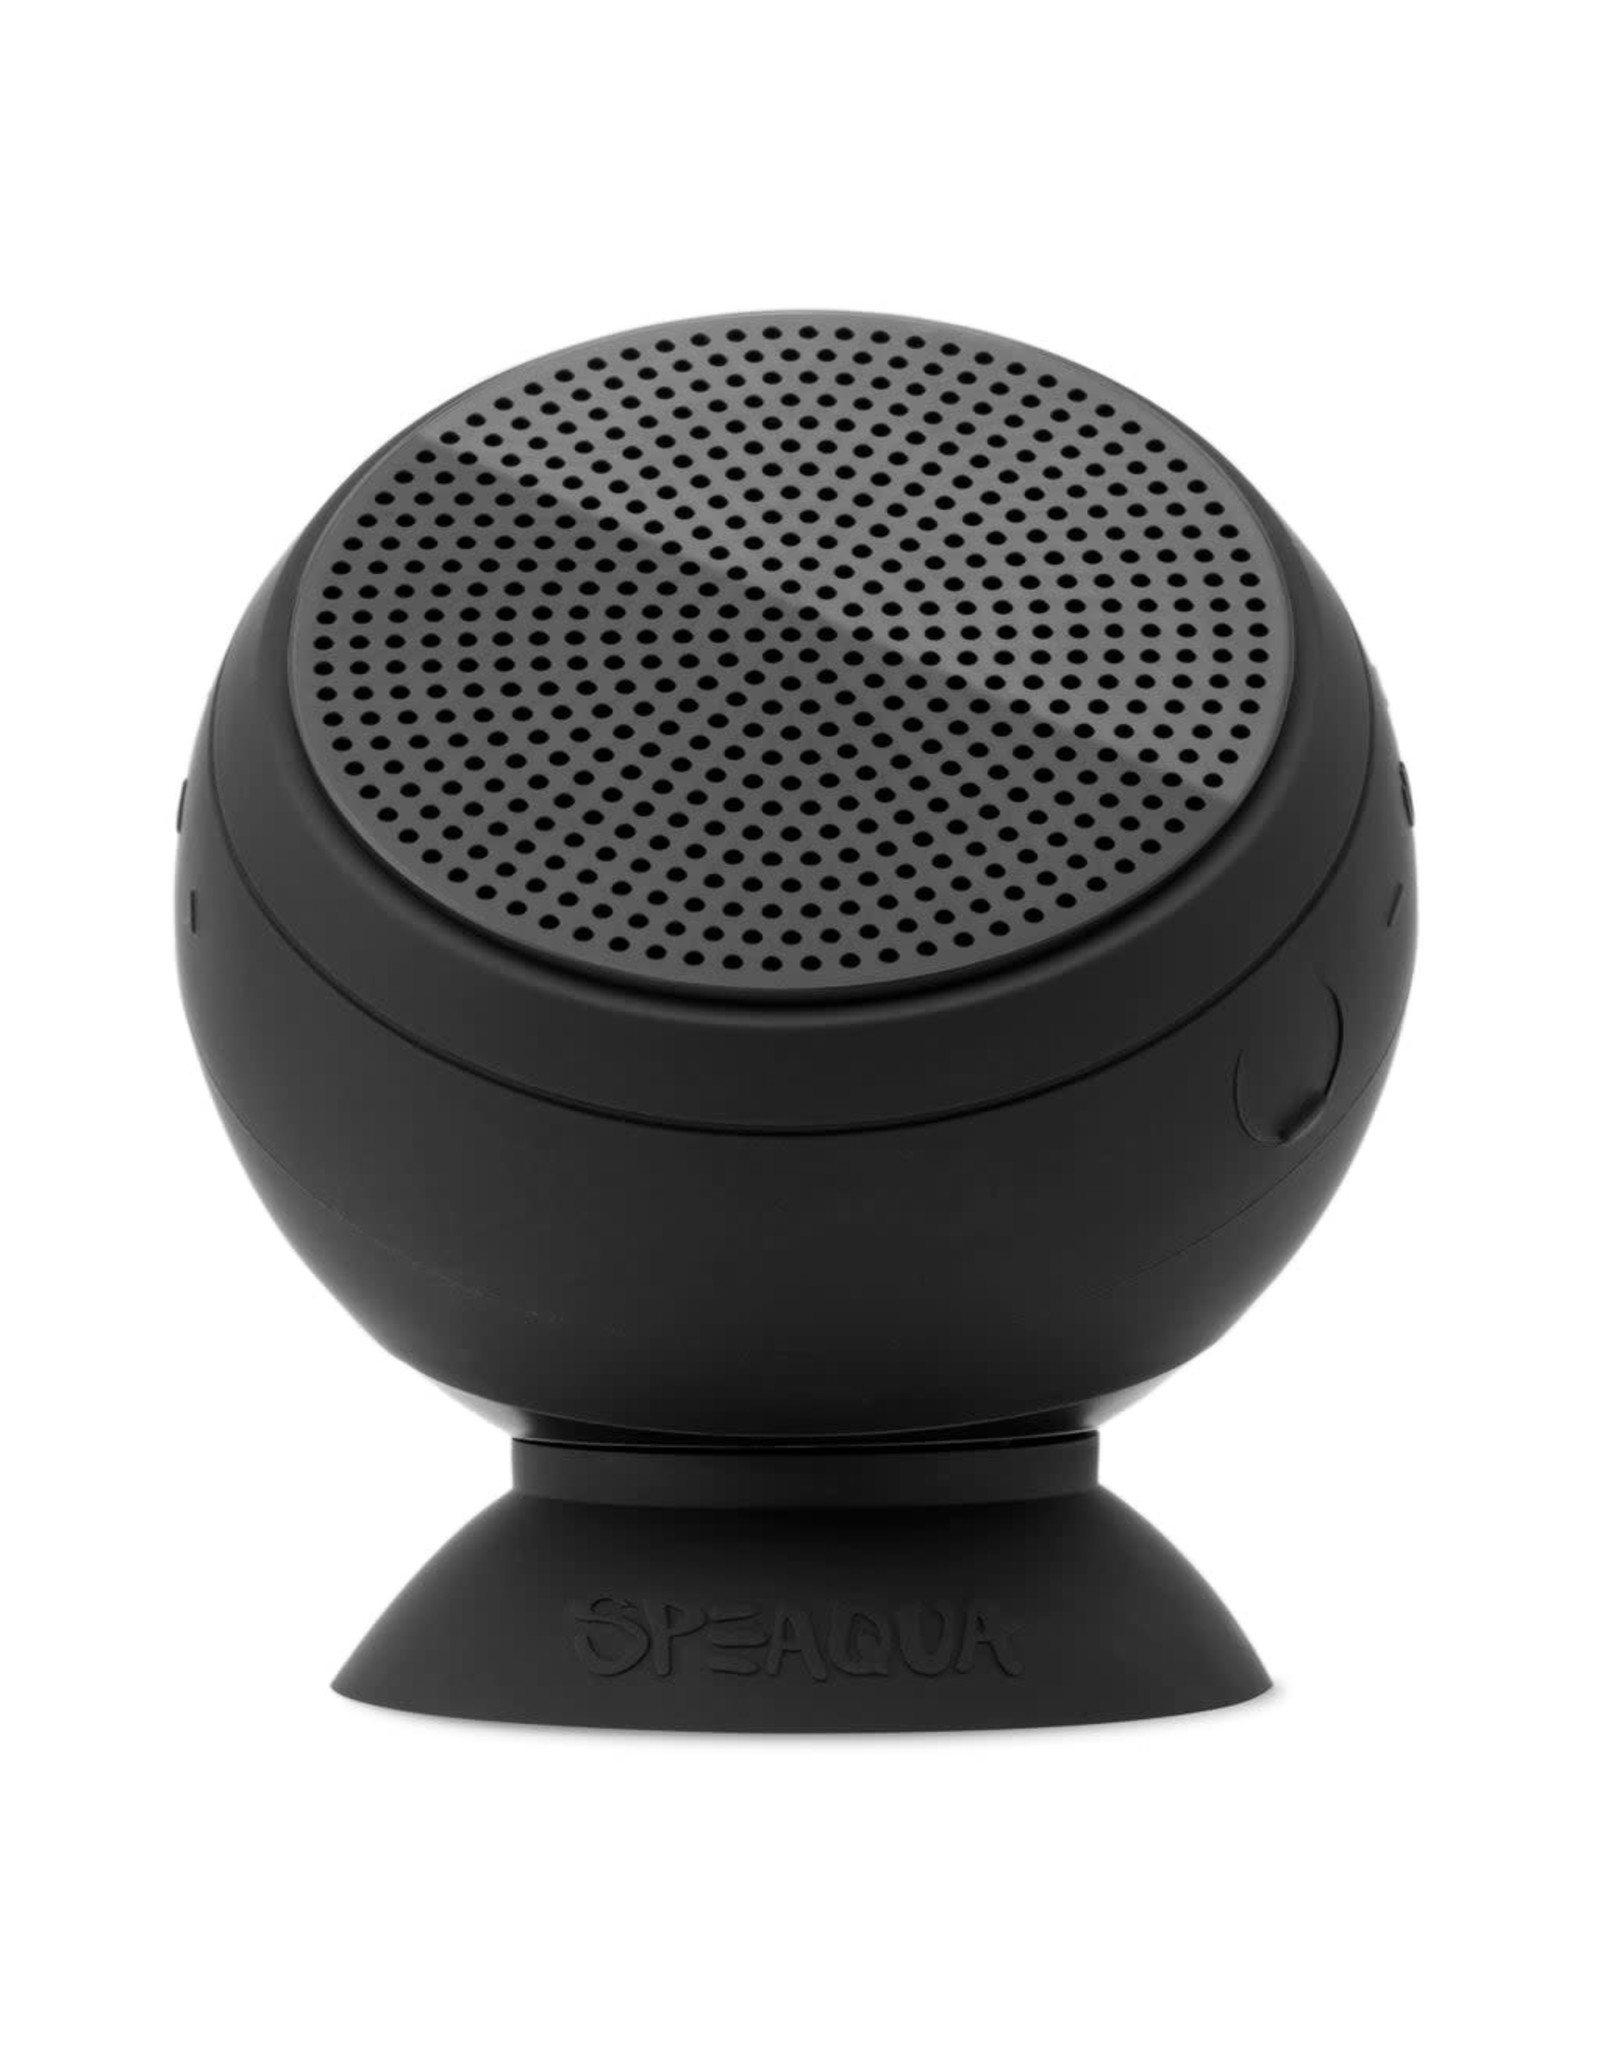 Speaqua Vibe 2.0 Haut-Parleur Impermeable Bluetooth